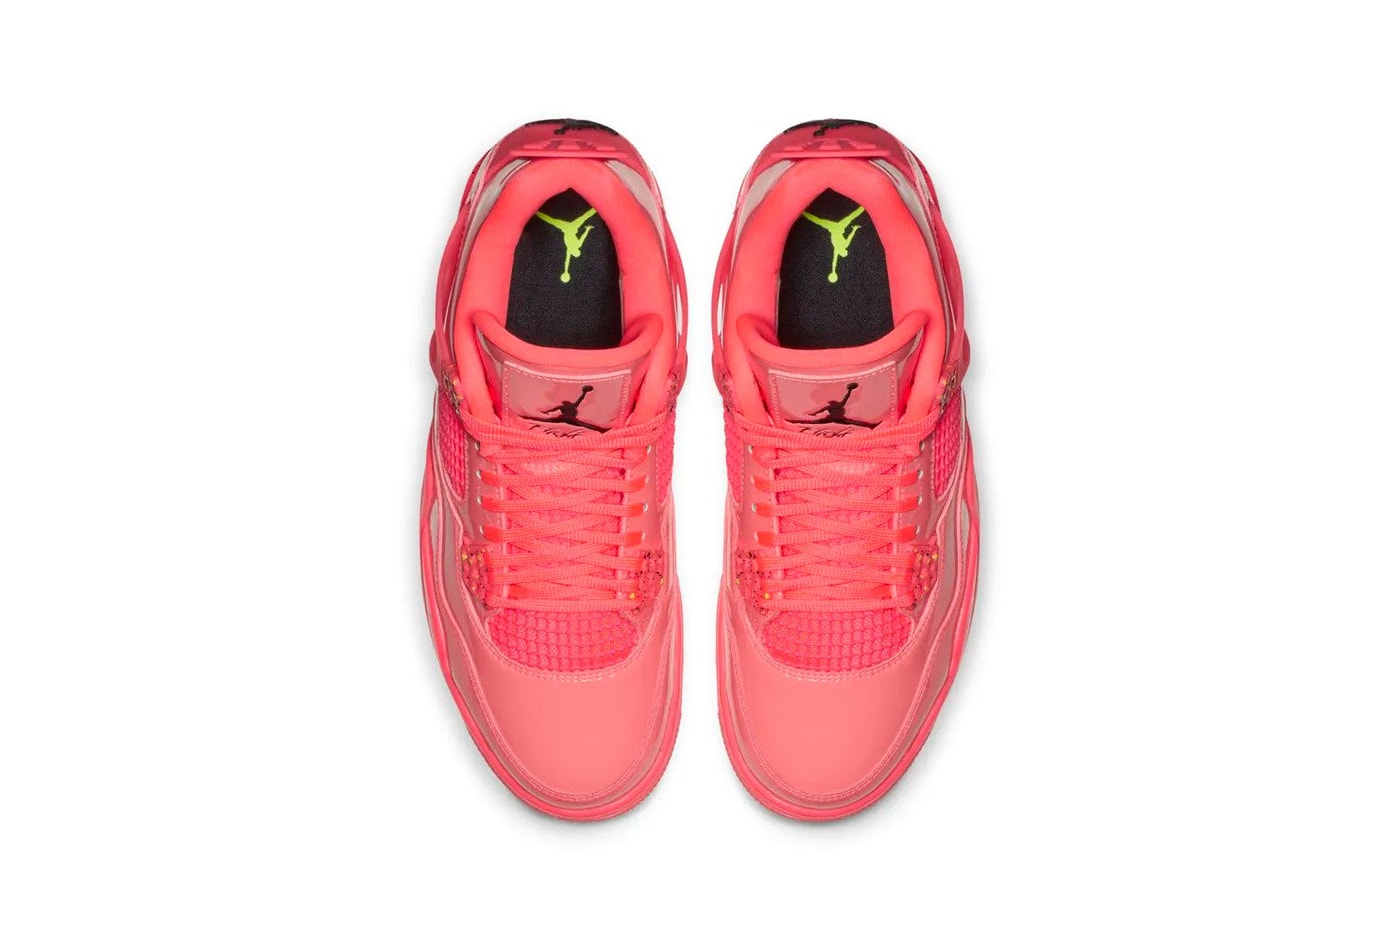 Nike Air Jordan 4 Hot Punch Pink